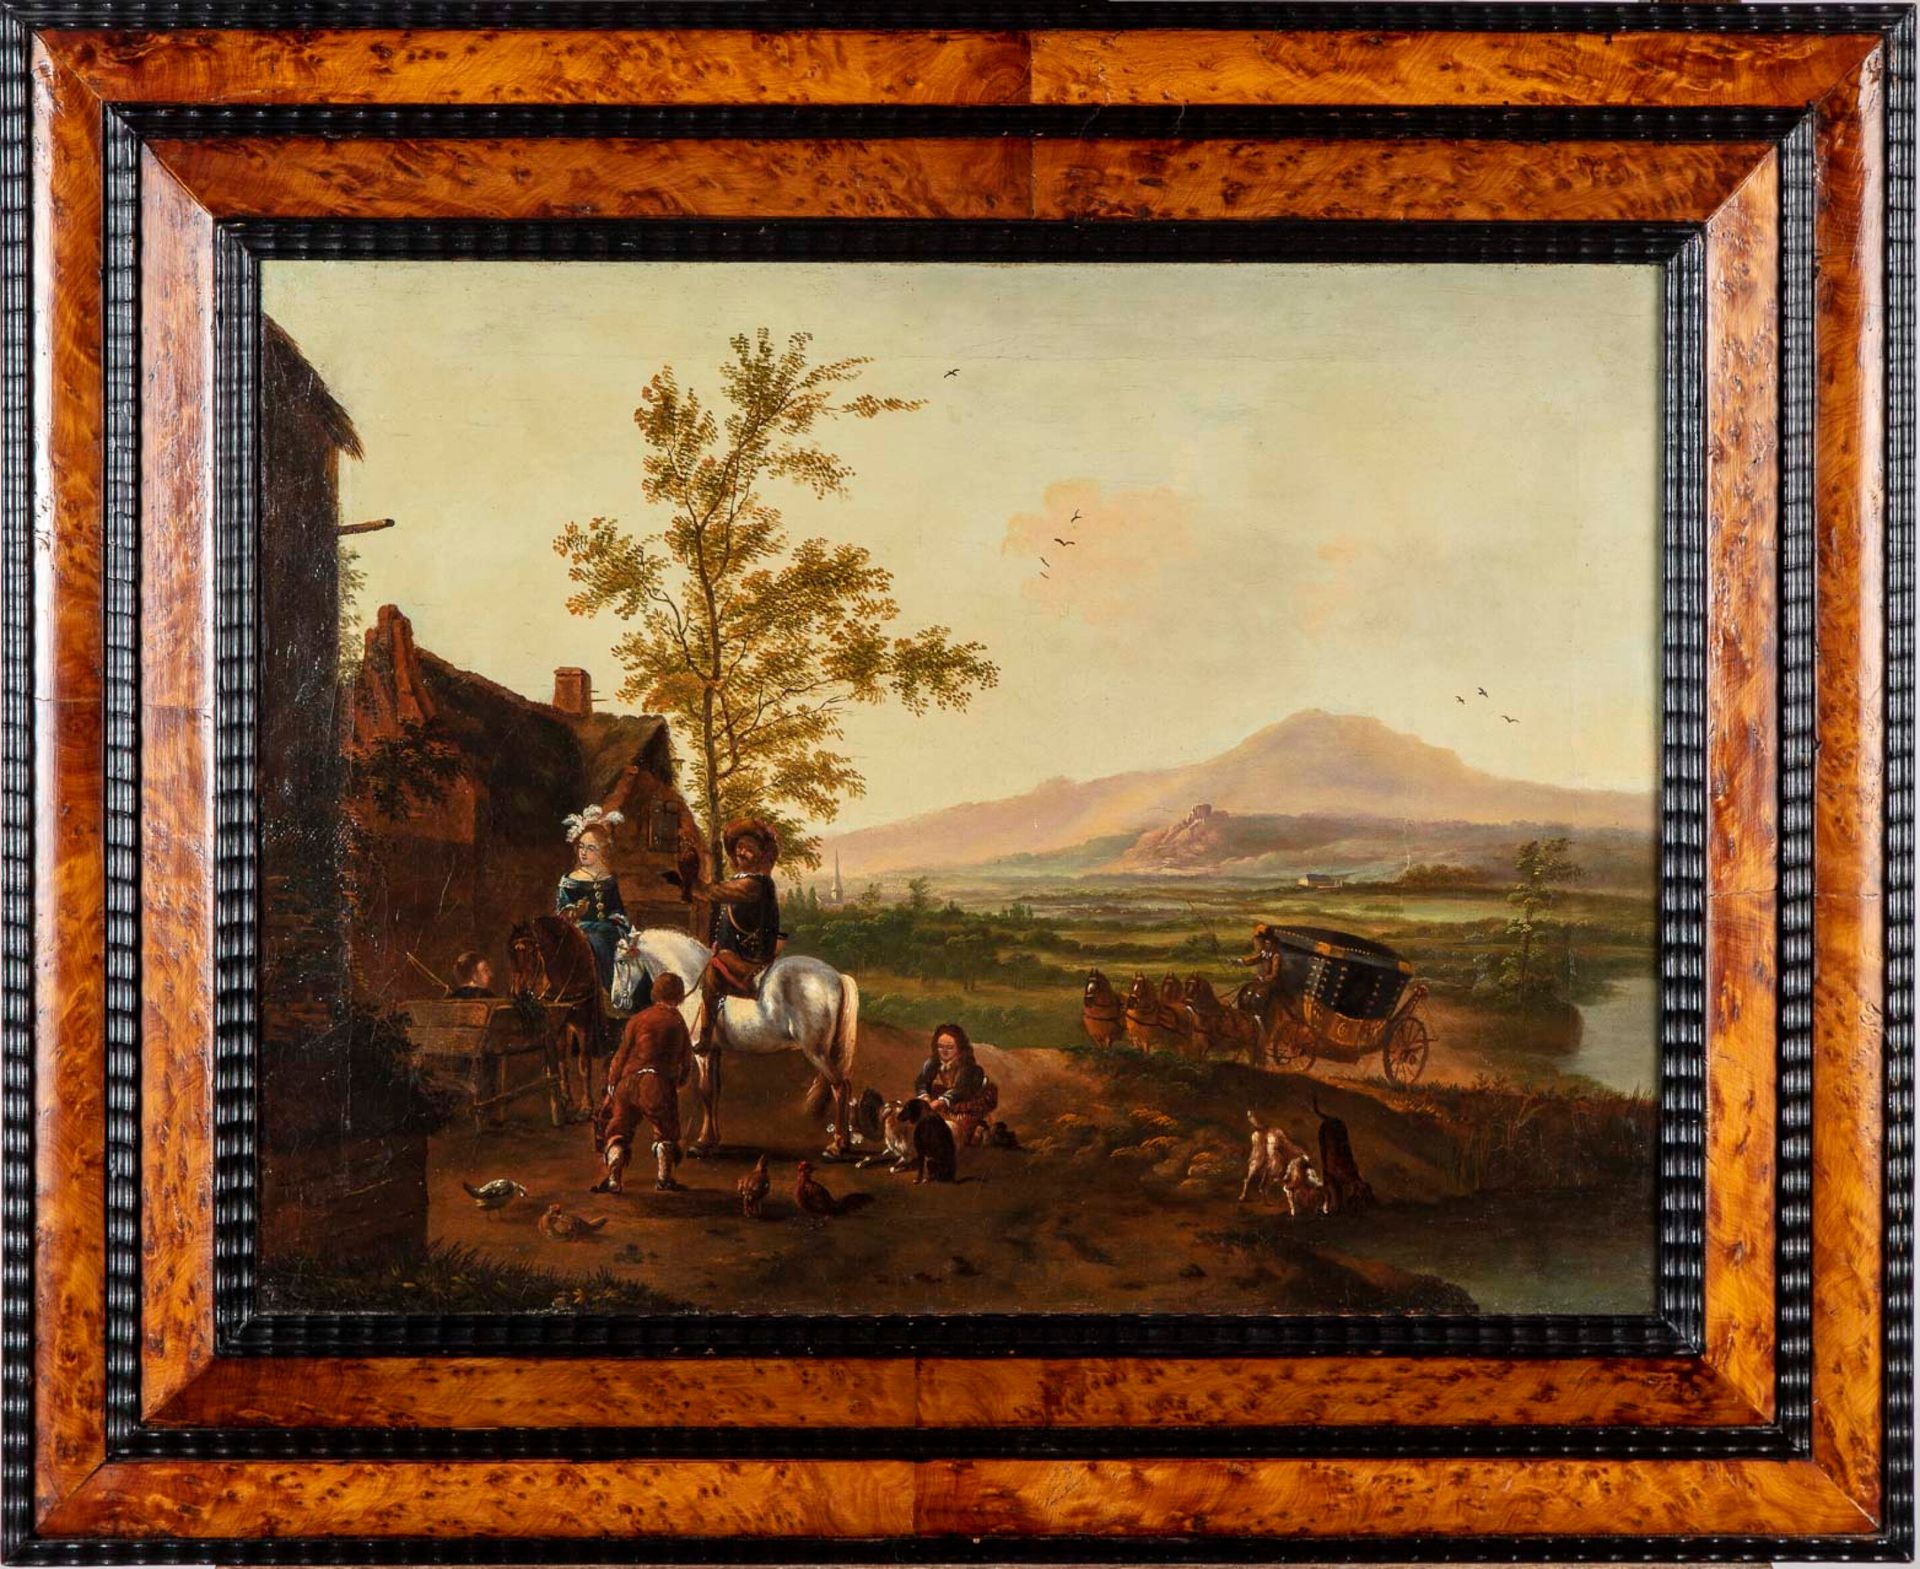 VAN FALENS In the taste of Carl van FALENS (1683-1733)

The departure for the ha&hellip;